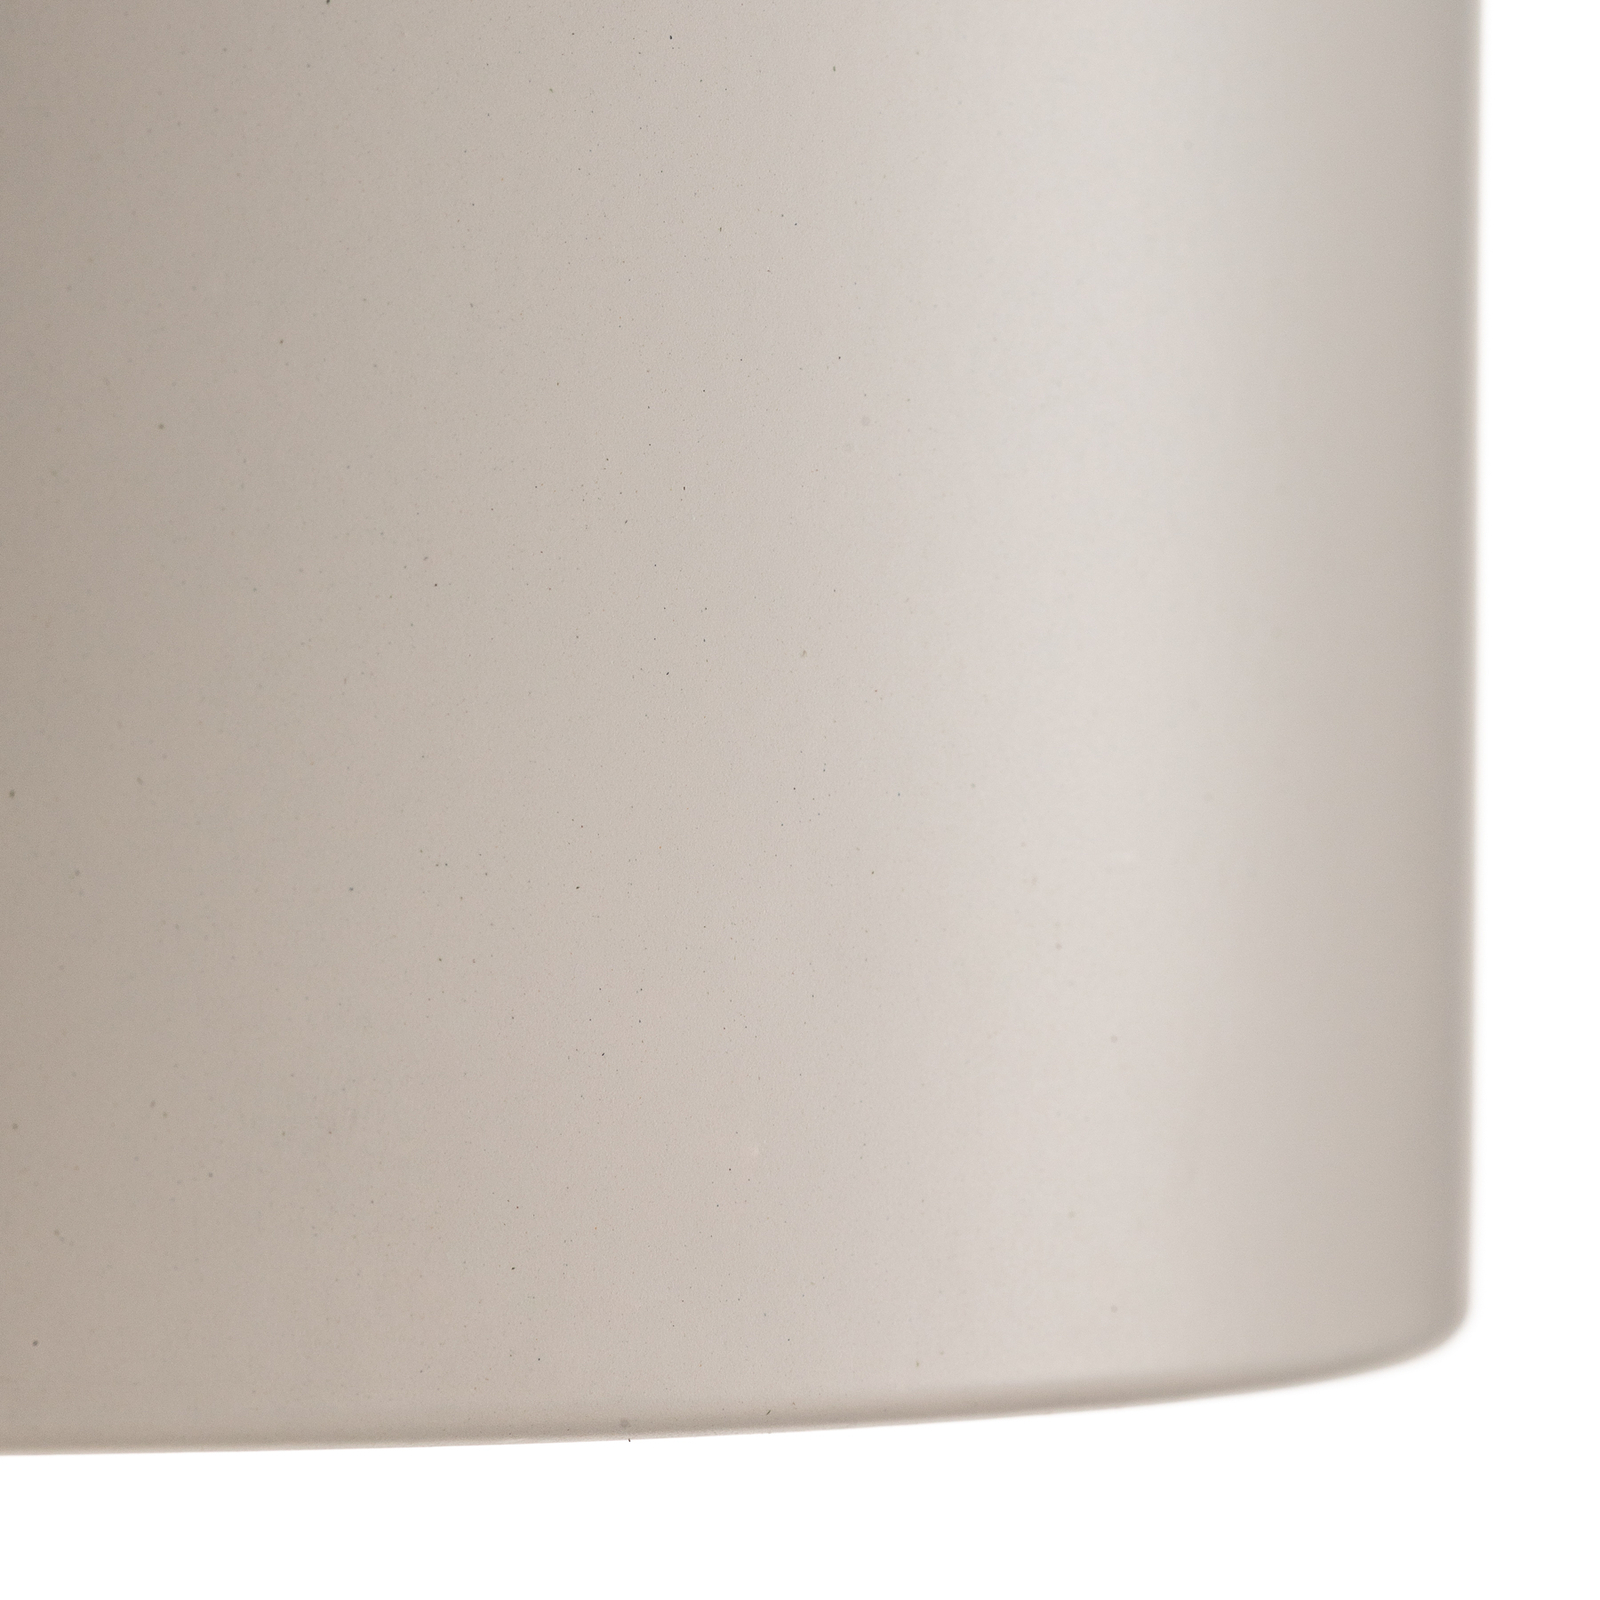 Faretto Ita LED bianco con diffusore, Ø 15 cm